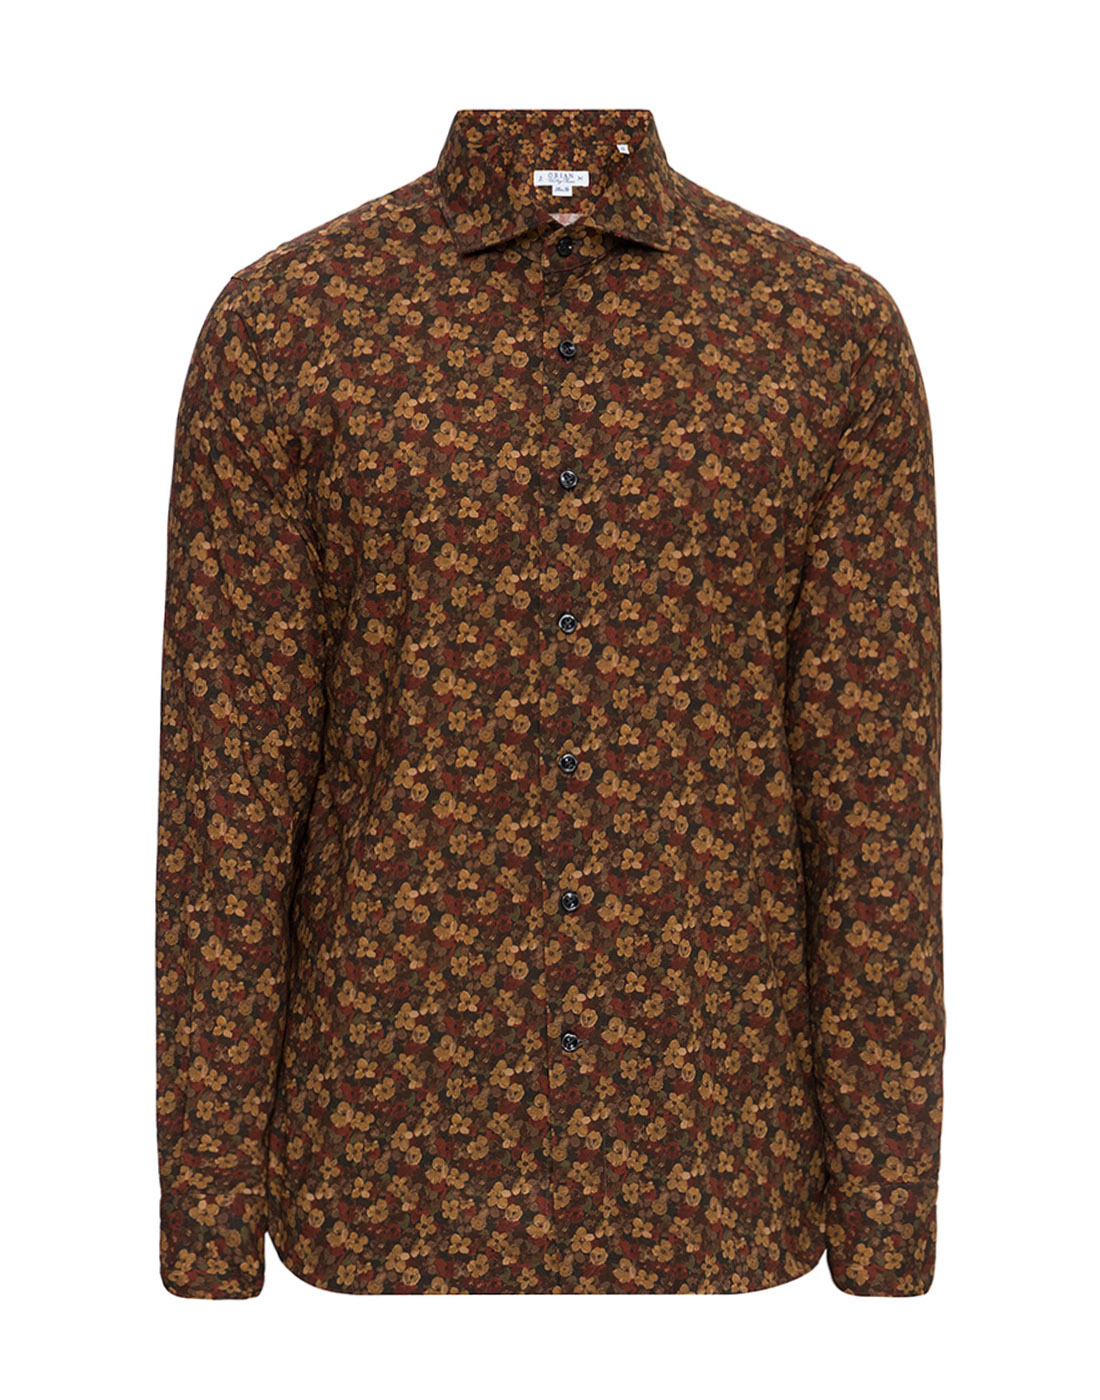 Мужская коричневая рубашка с принтом Orian SCW73 02P401 15-1